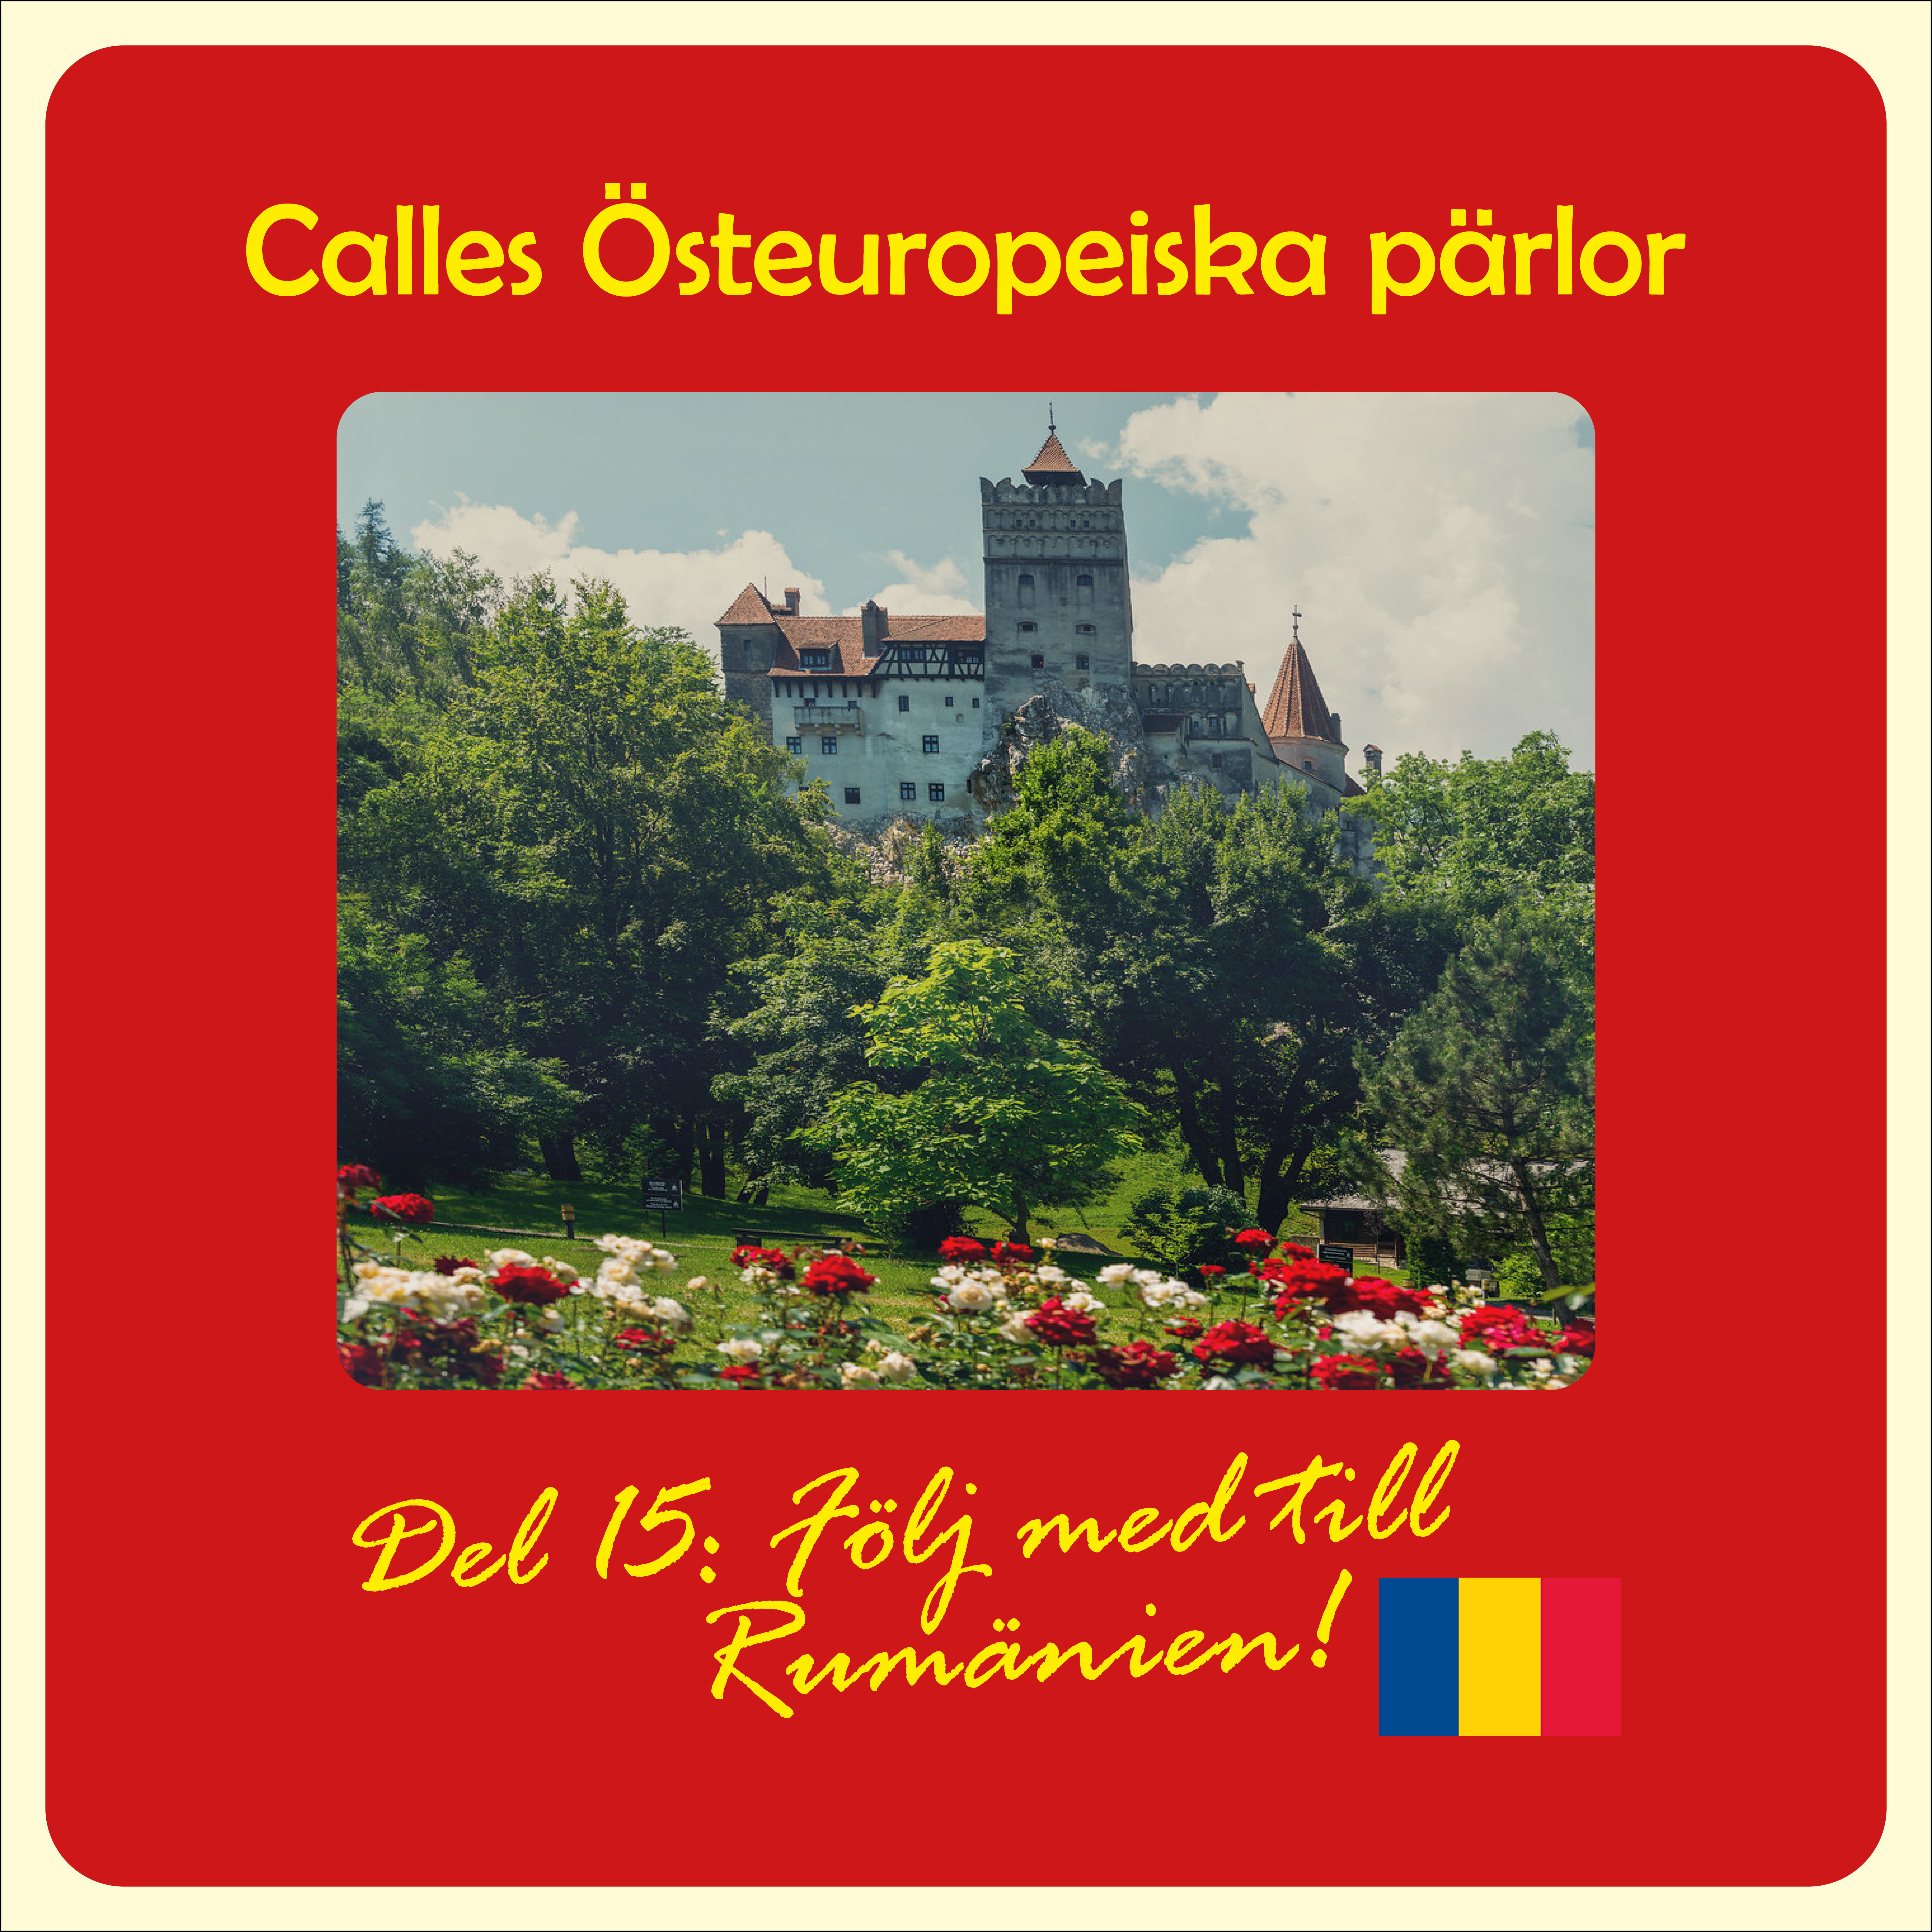 Calles Östeuropeiska pärlor – del 15: Följ med till Rumänien!